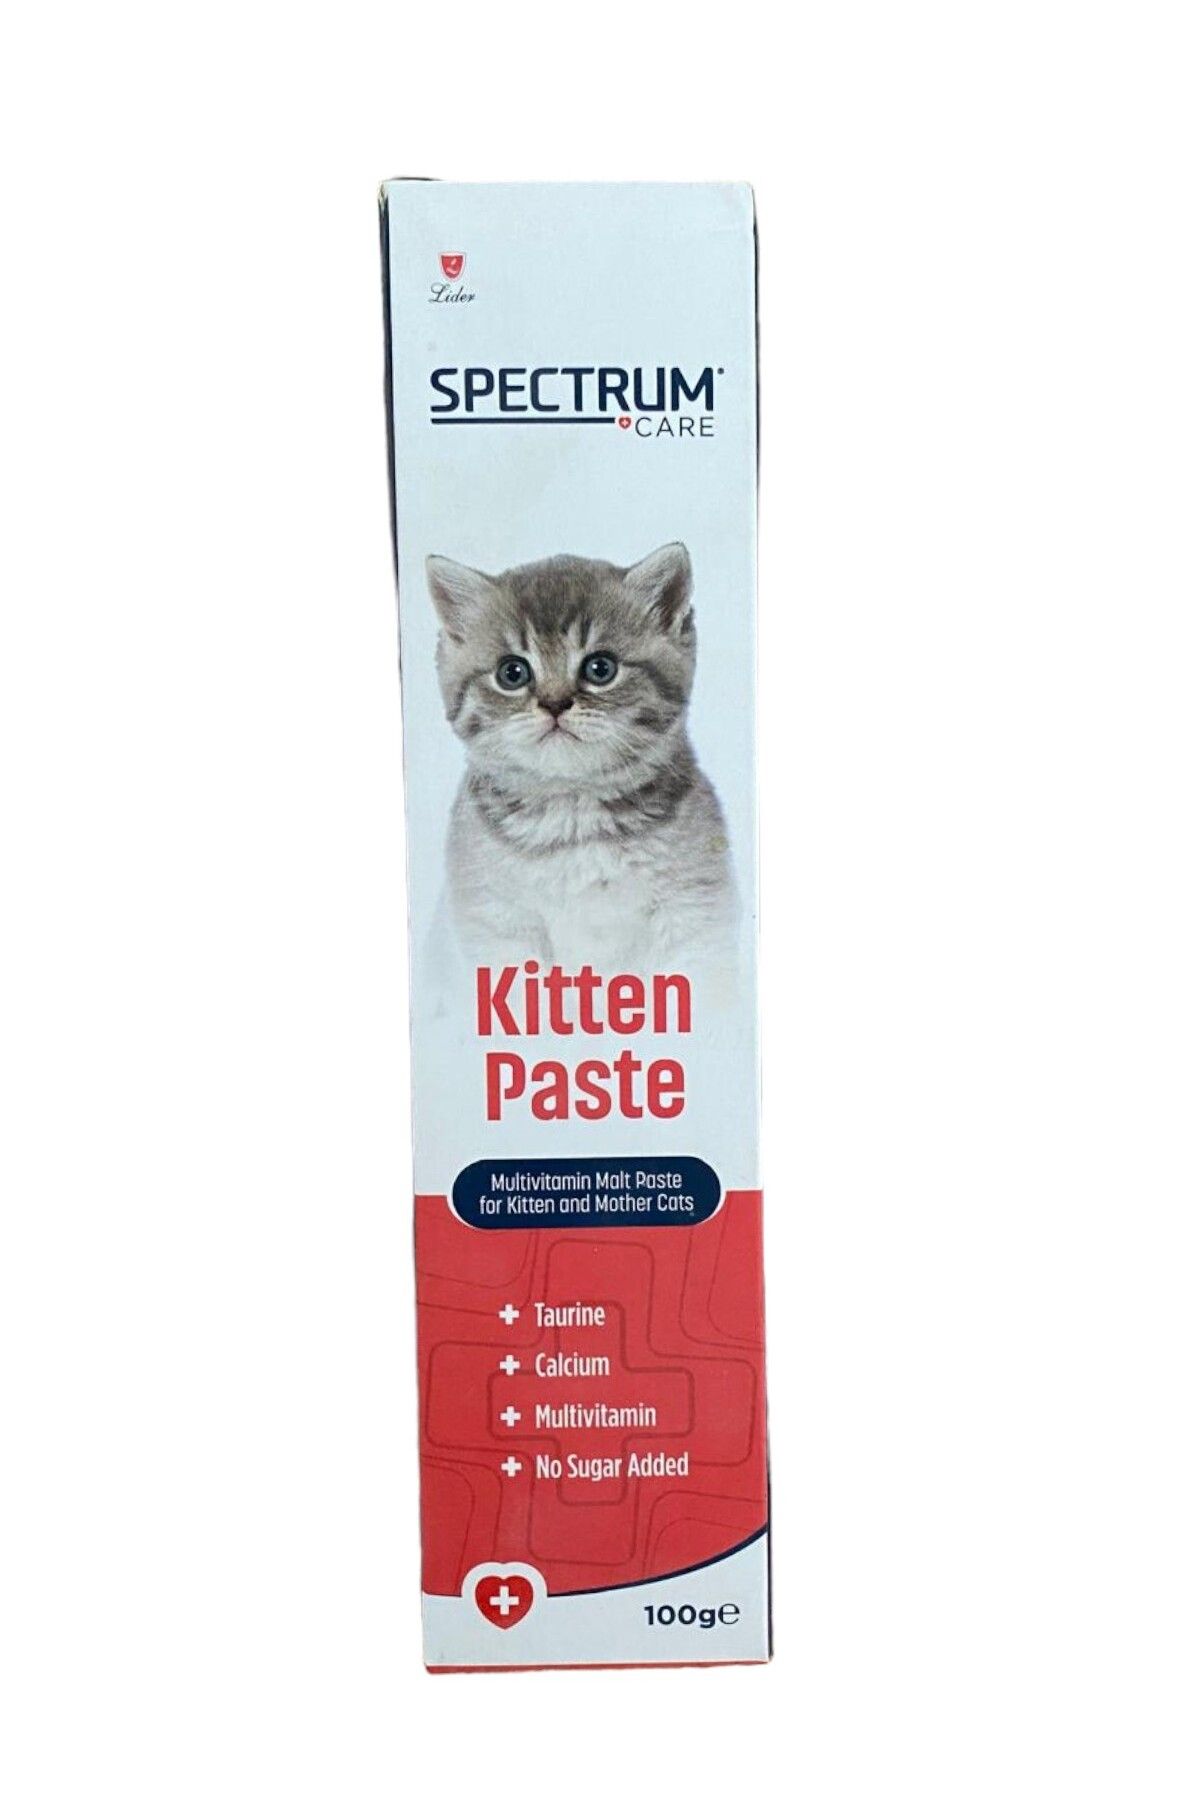 Spectrum Anne ve Yavru Kediler için Multivitamin Malt Paste Macunu 100gr